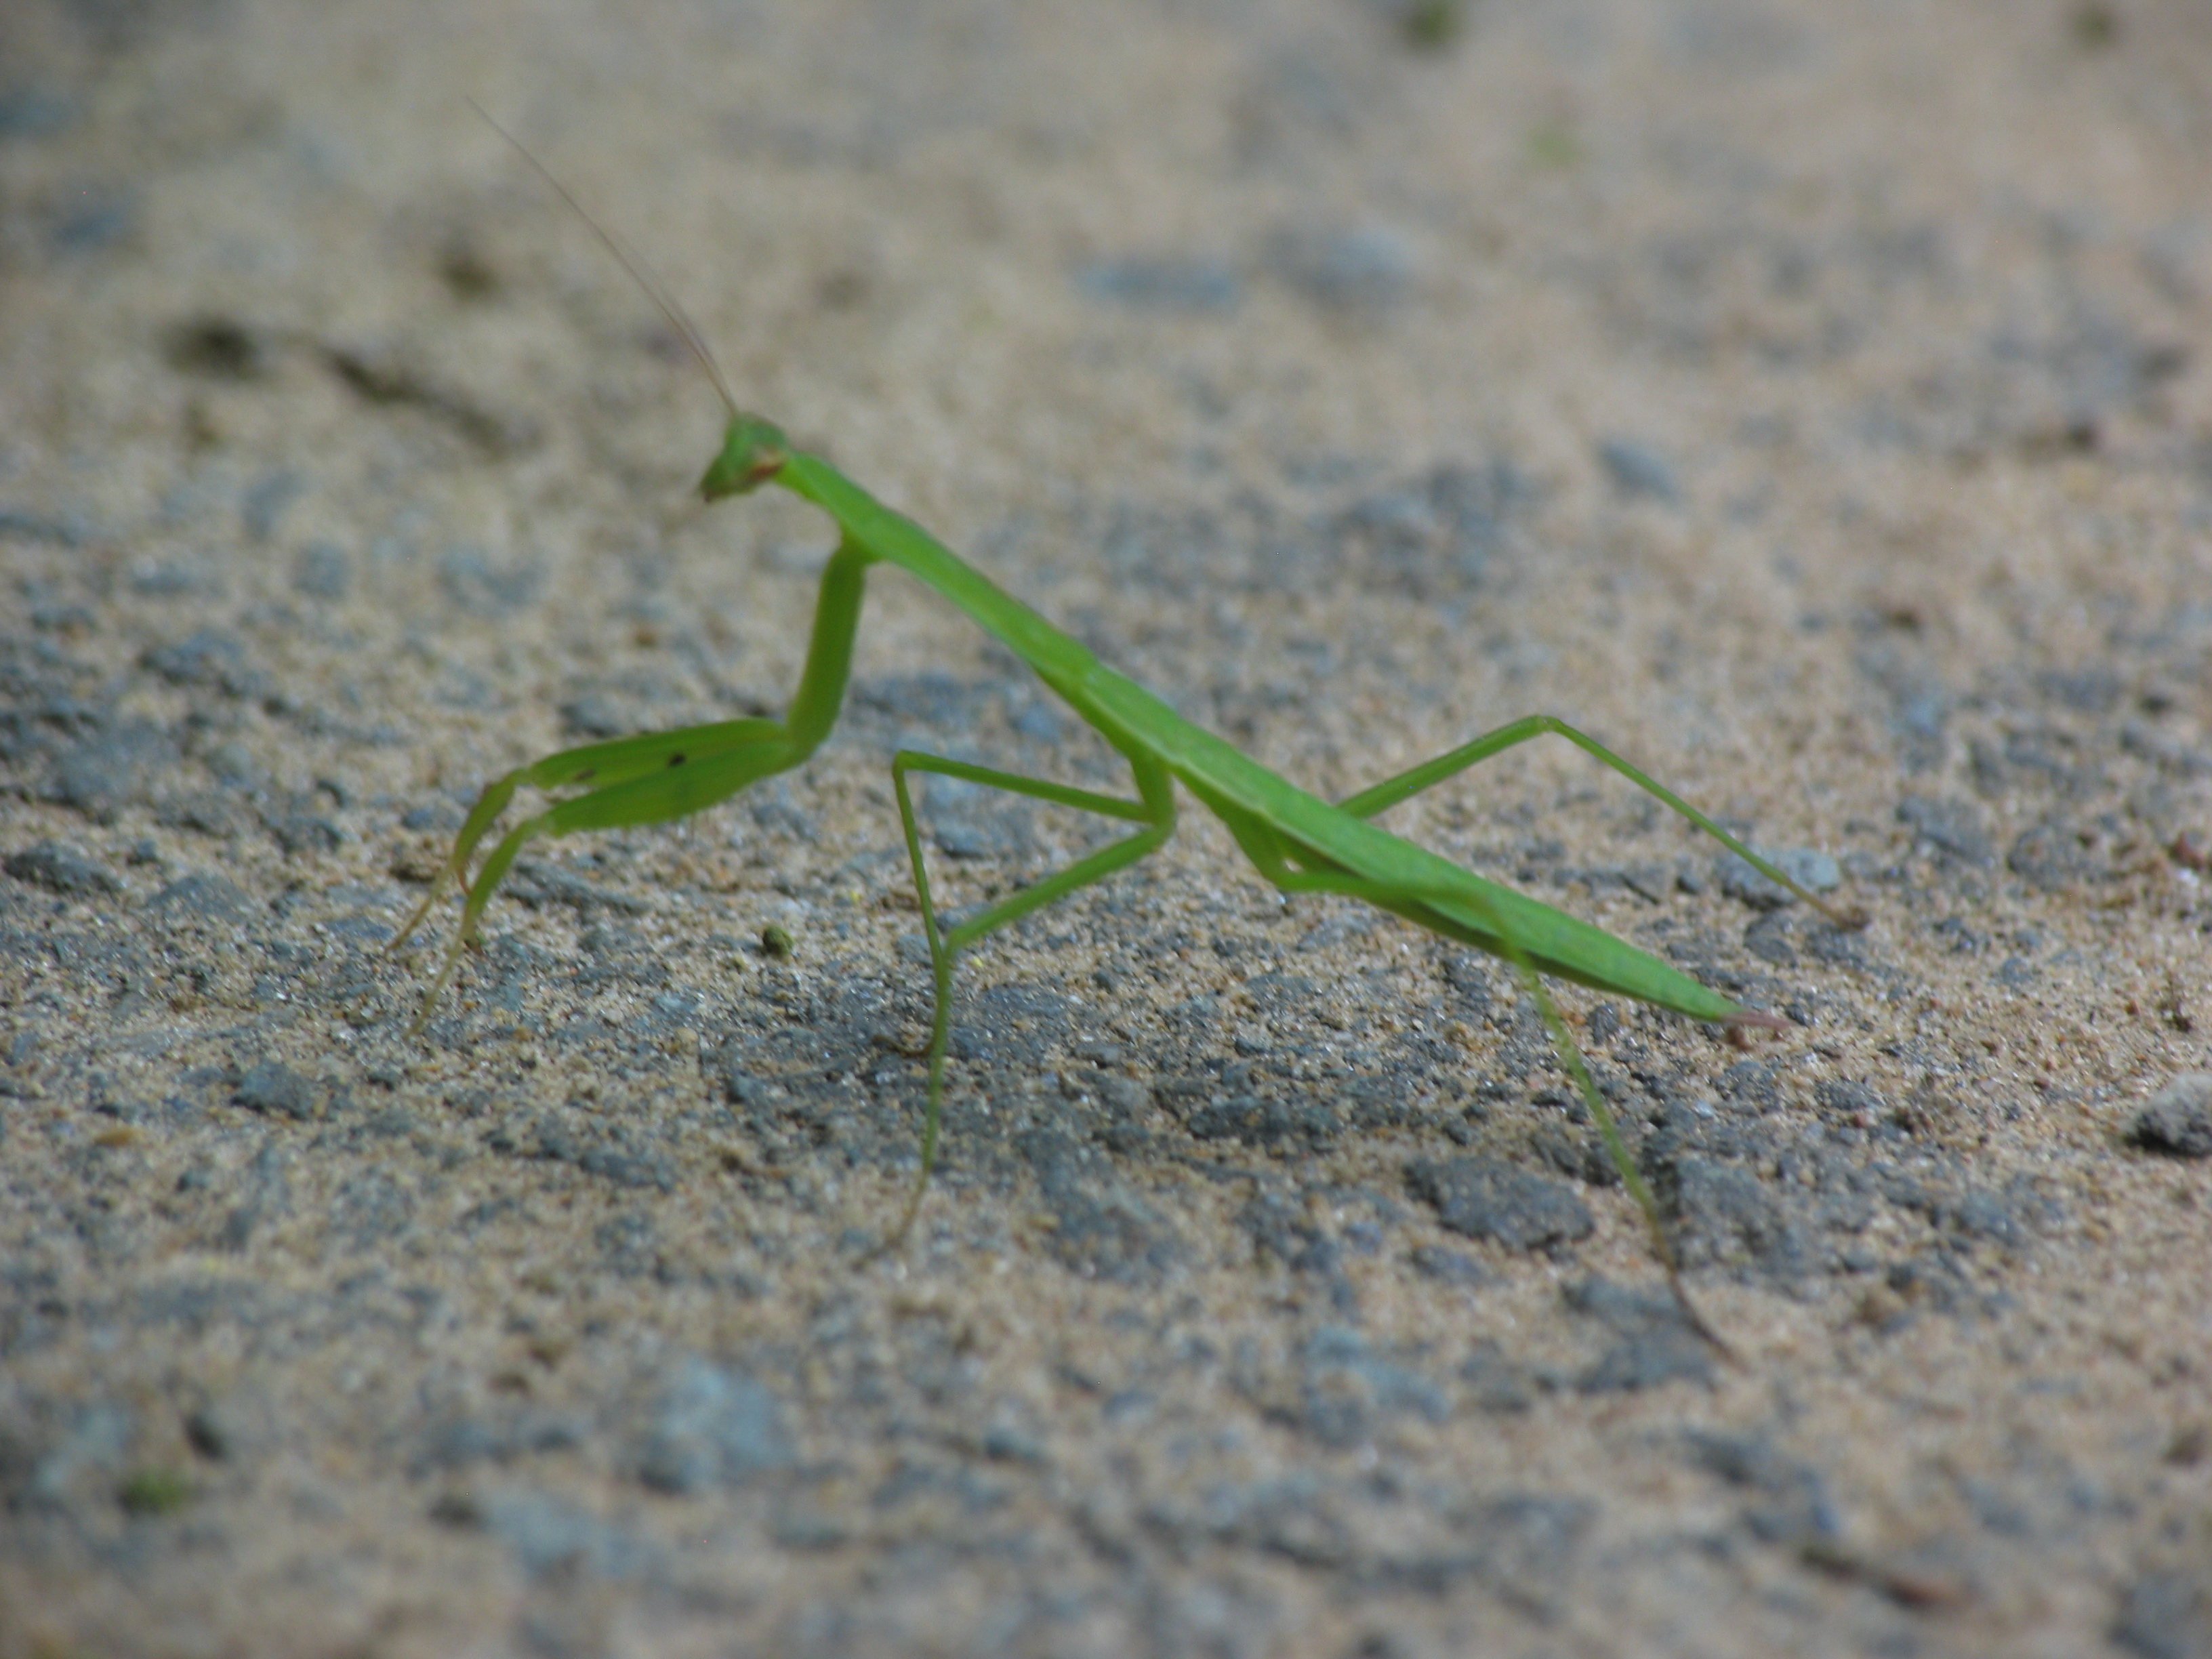 Praying Mantis on the path